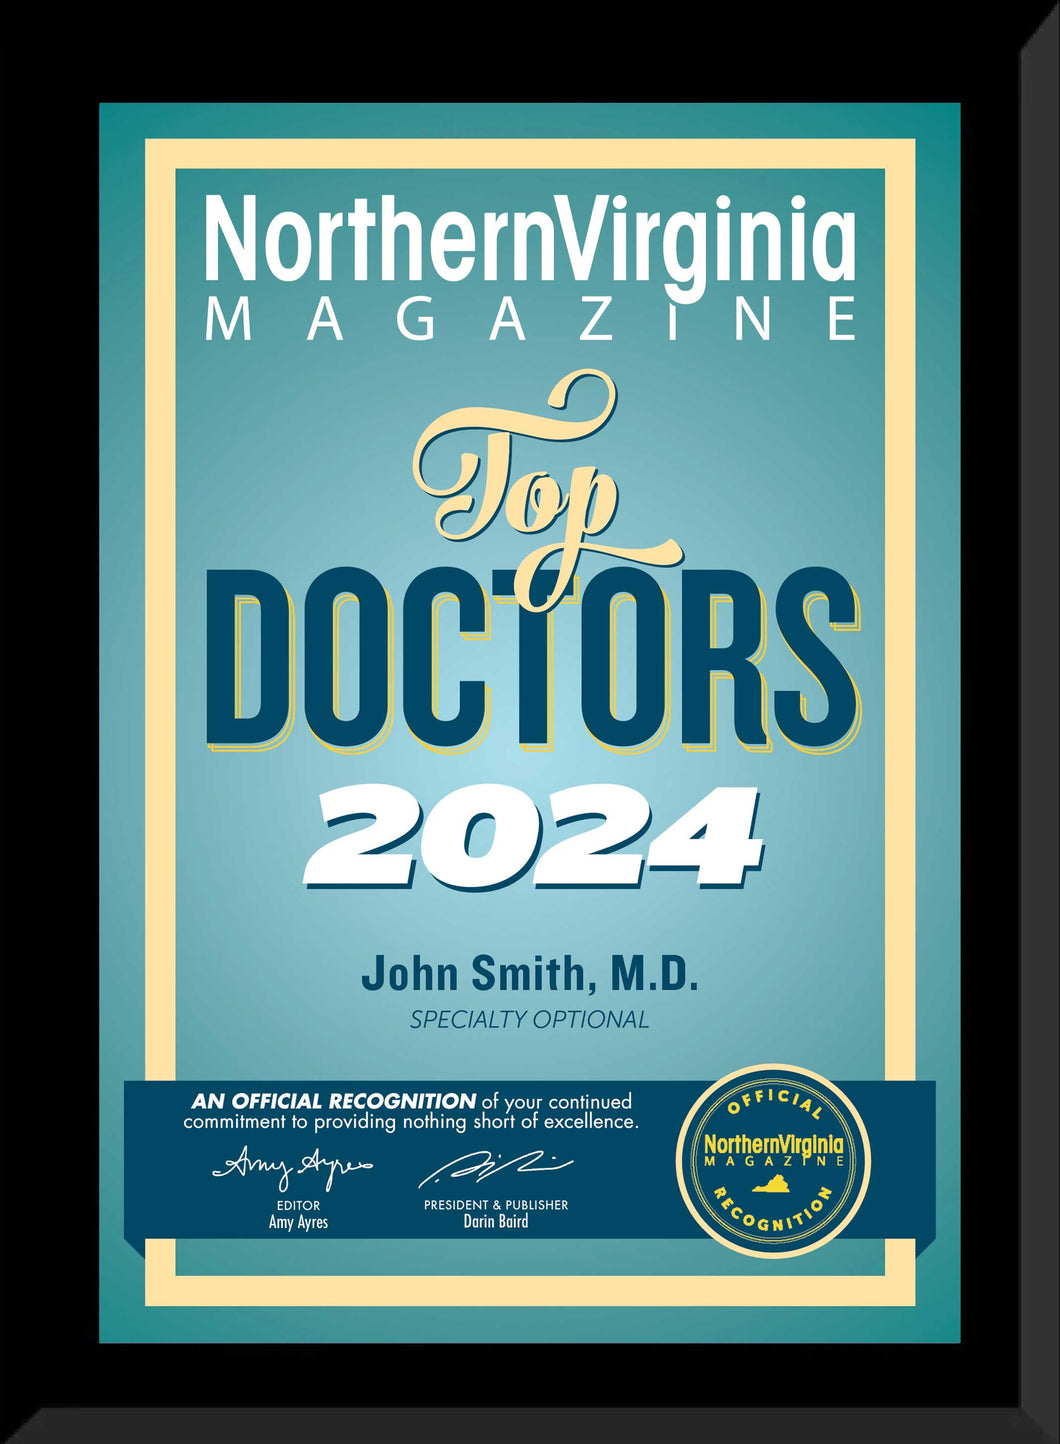 2024 TOP DOCTORS PLAQUE